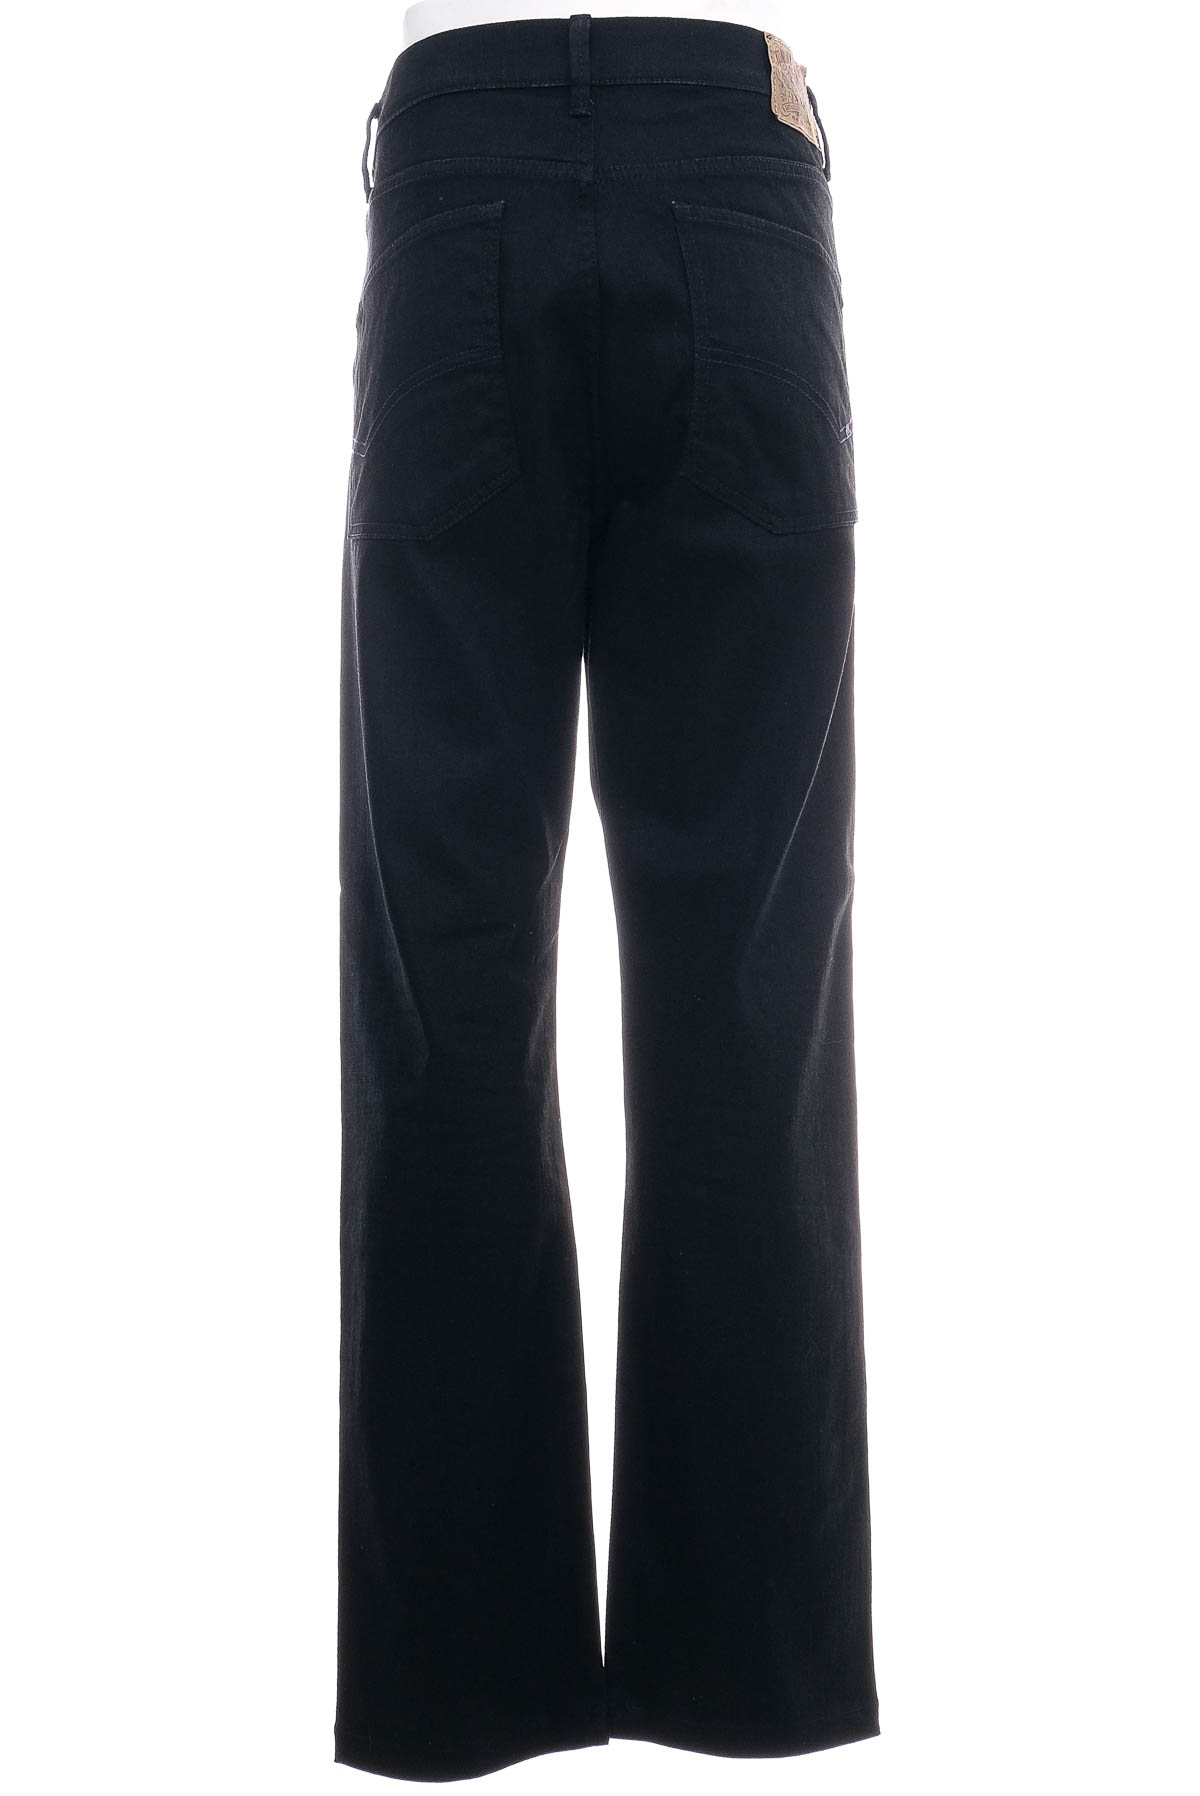 Jeans pentru bărbăți - TOMMY HILFIGER - 1